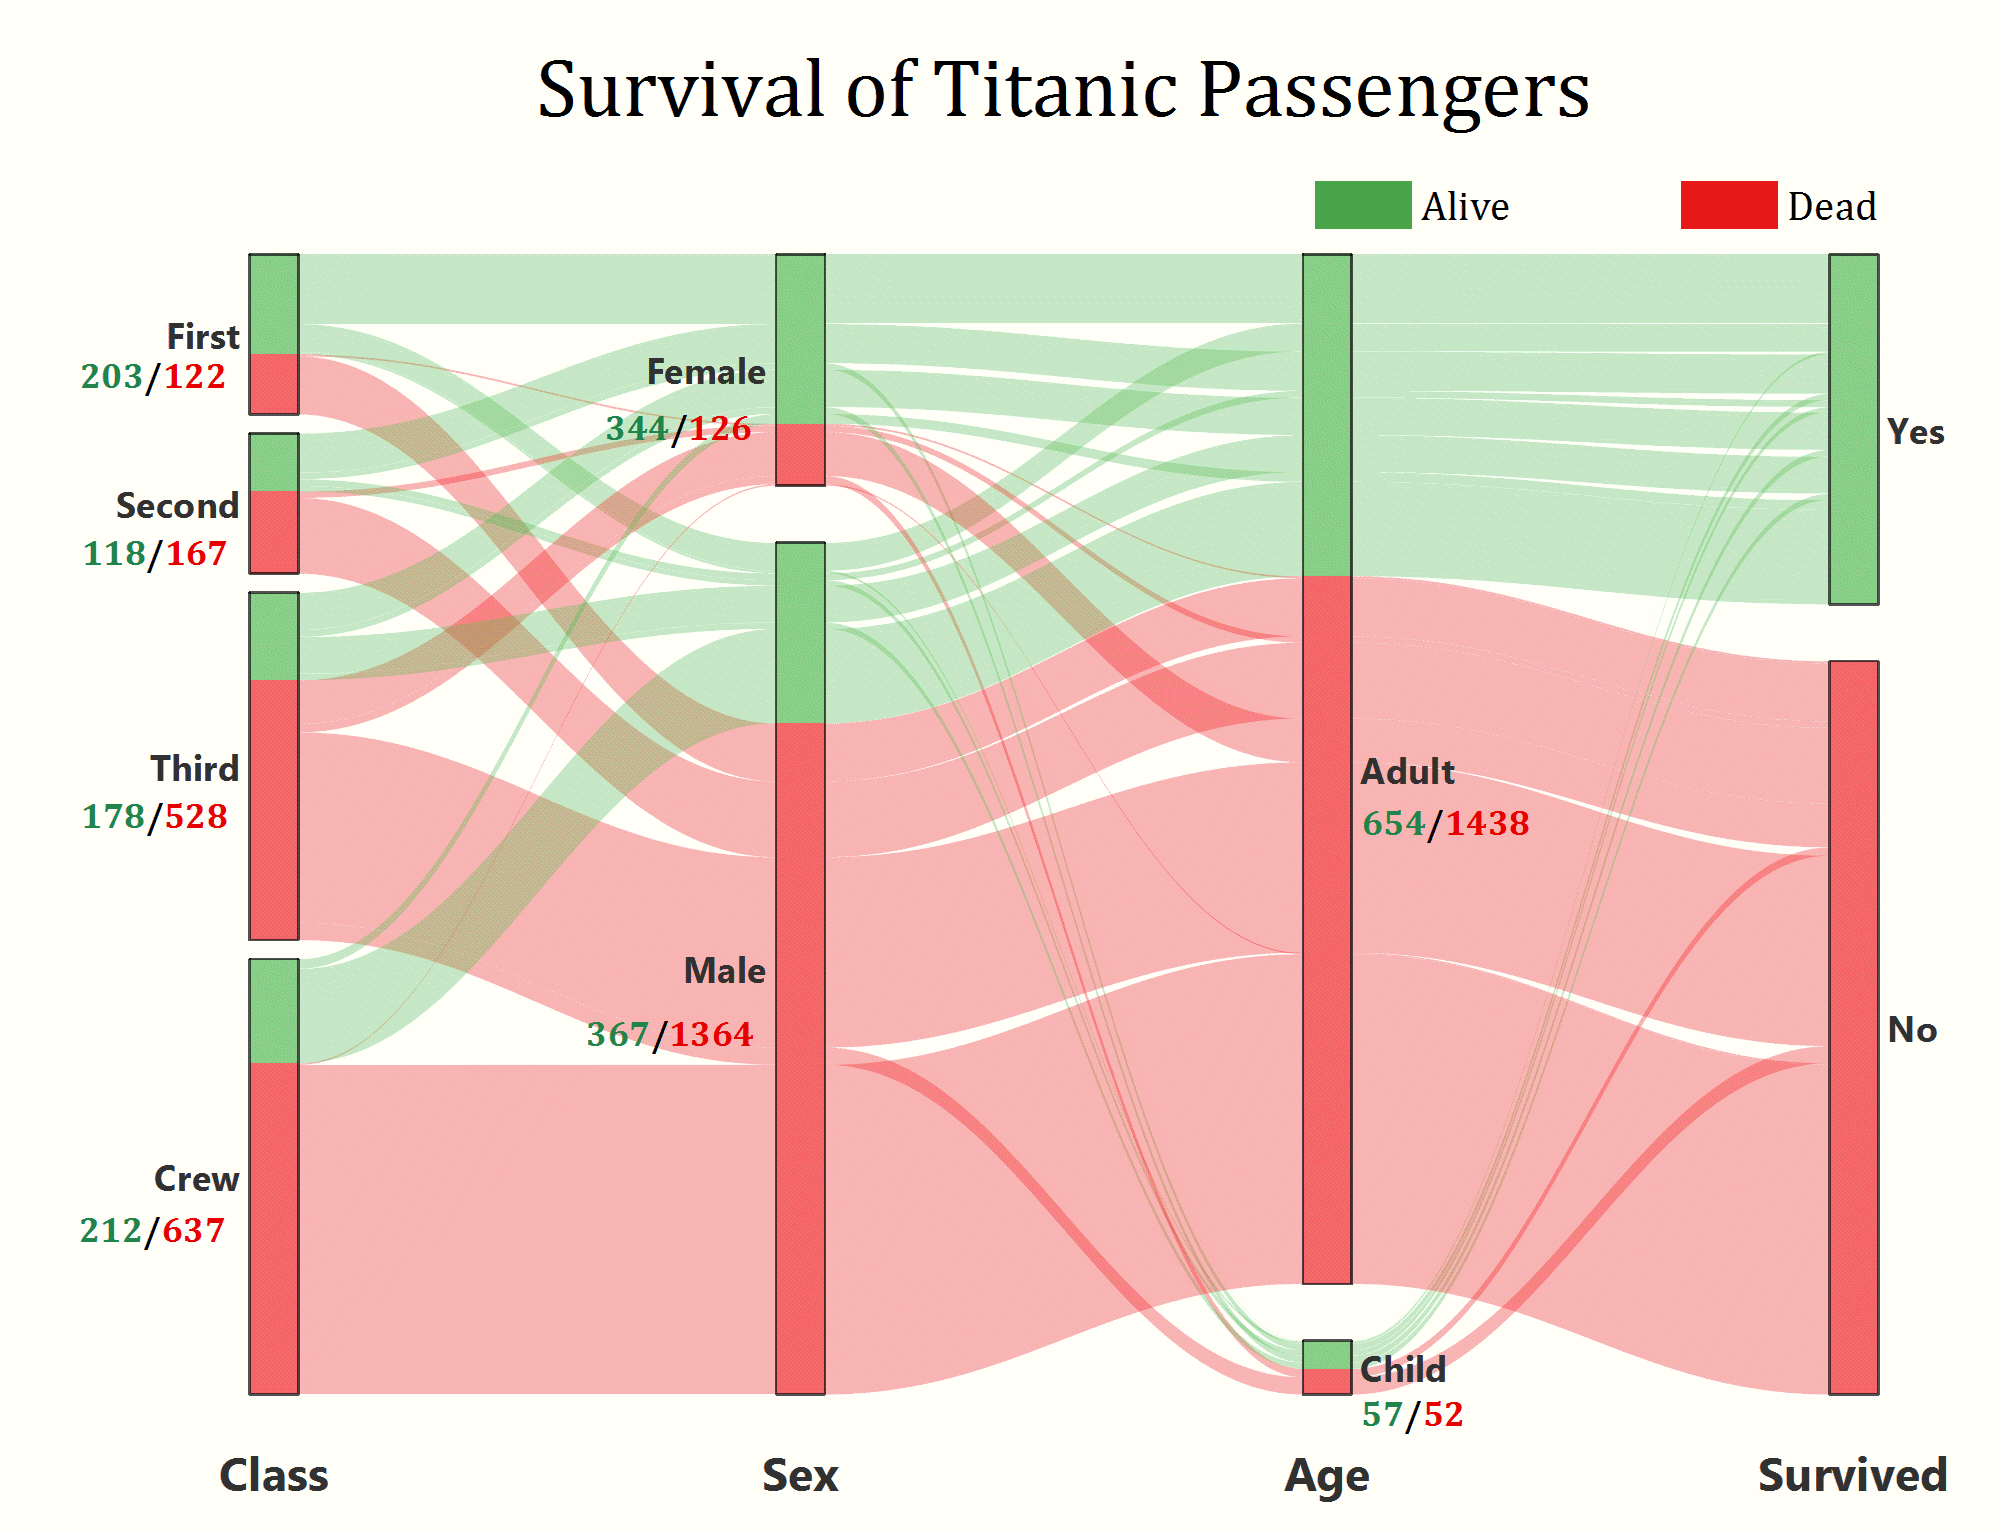 OriginPro und Origin 2020: Alluvialdiagramm zu den Überlebensdaten der Titanic